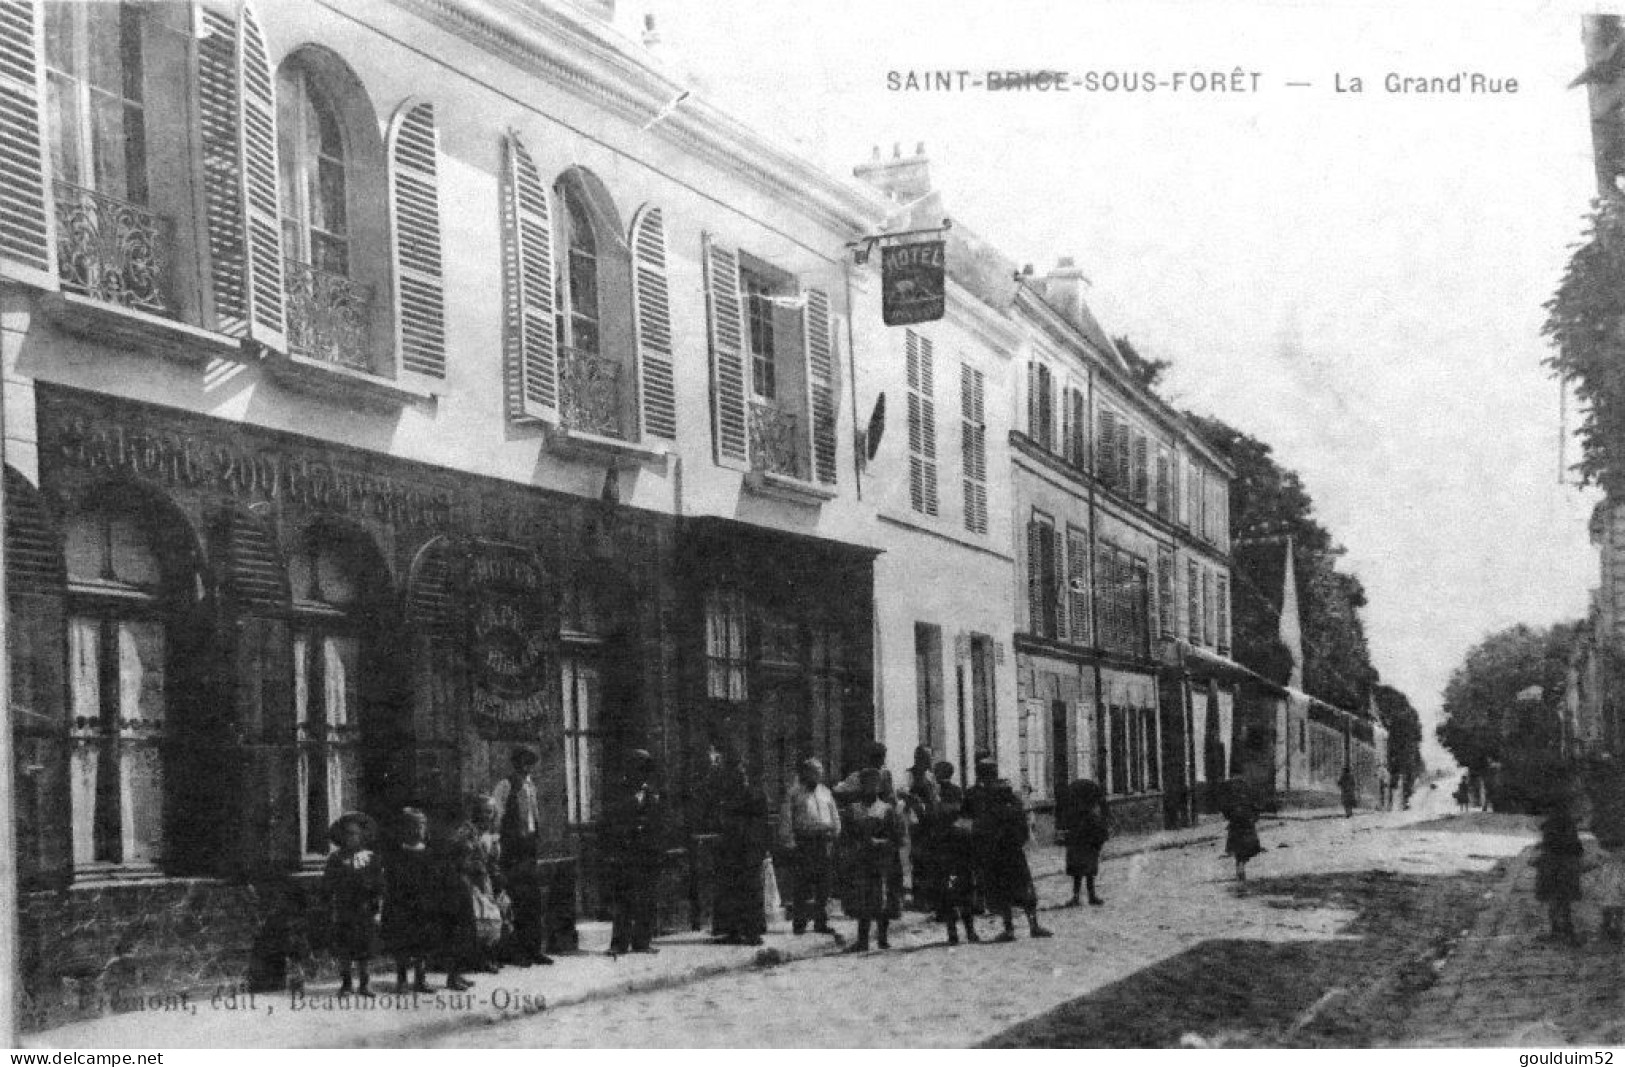 La Grand'rue - Saint-Brice-sous-Forêt